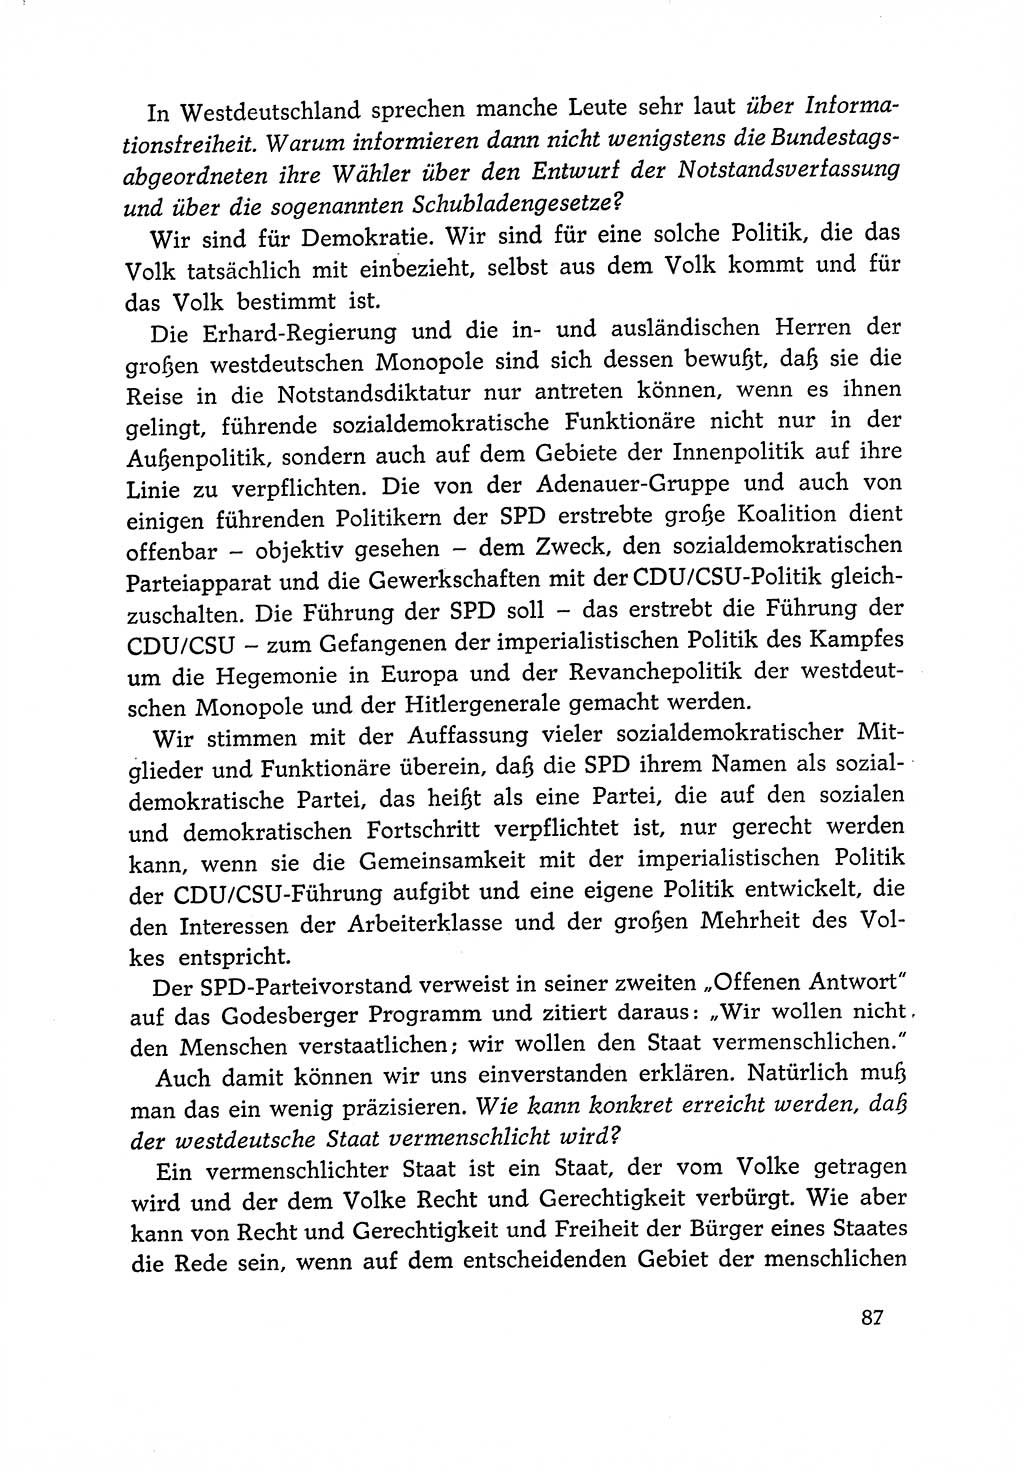 Dokumente der Sozialistischen Einheitspartei Deutschlands (SED) [Deutsche Demokratische Republik (DDR)] 1966-1967, Seite 87 (Dok. SED DDR 1966-1967, S. 87)